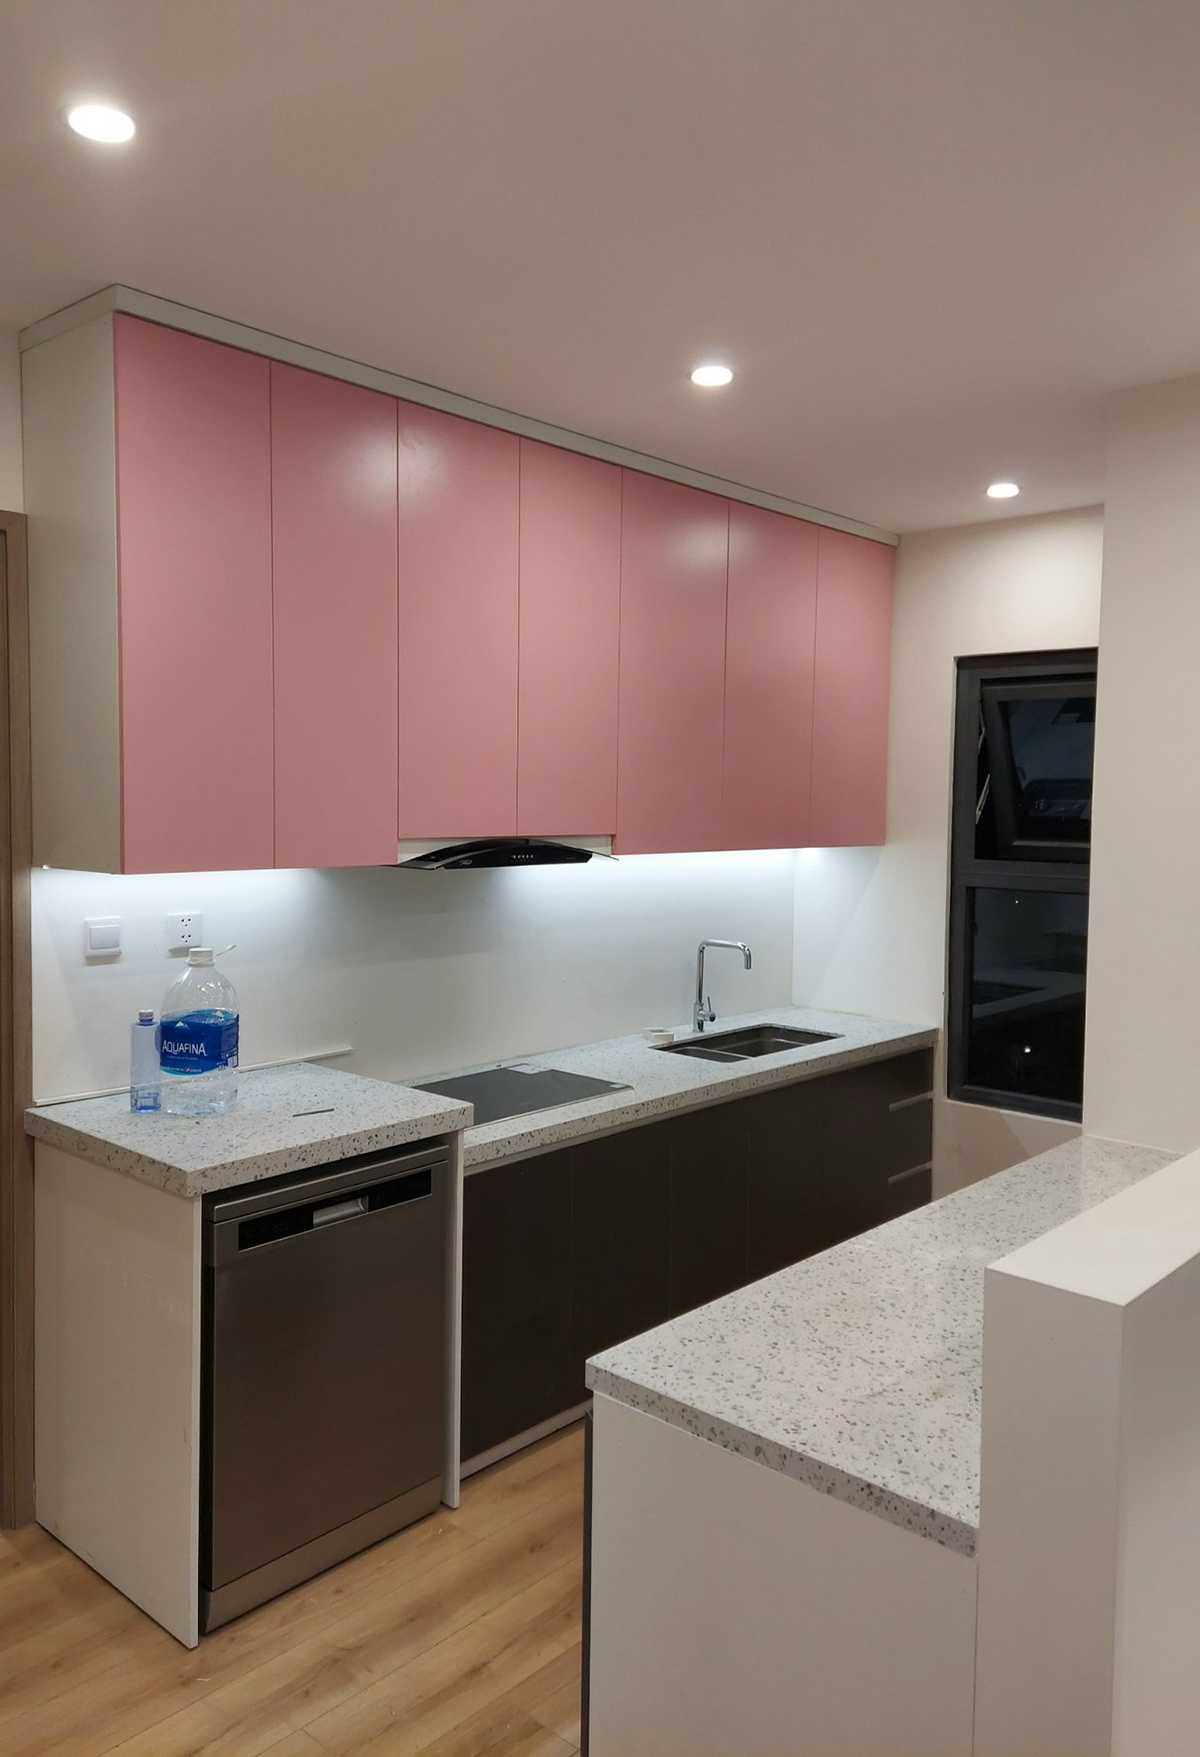 Phòng bếp, phong cách Khối màu Color Block, hoàn thiện nội thất, căn hộ Vinhomes Grand Park Quận 9